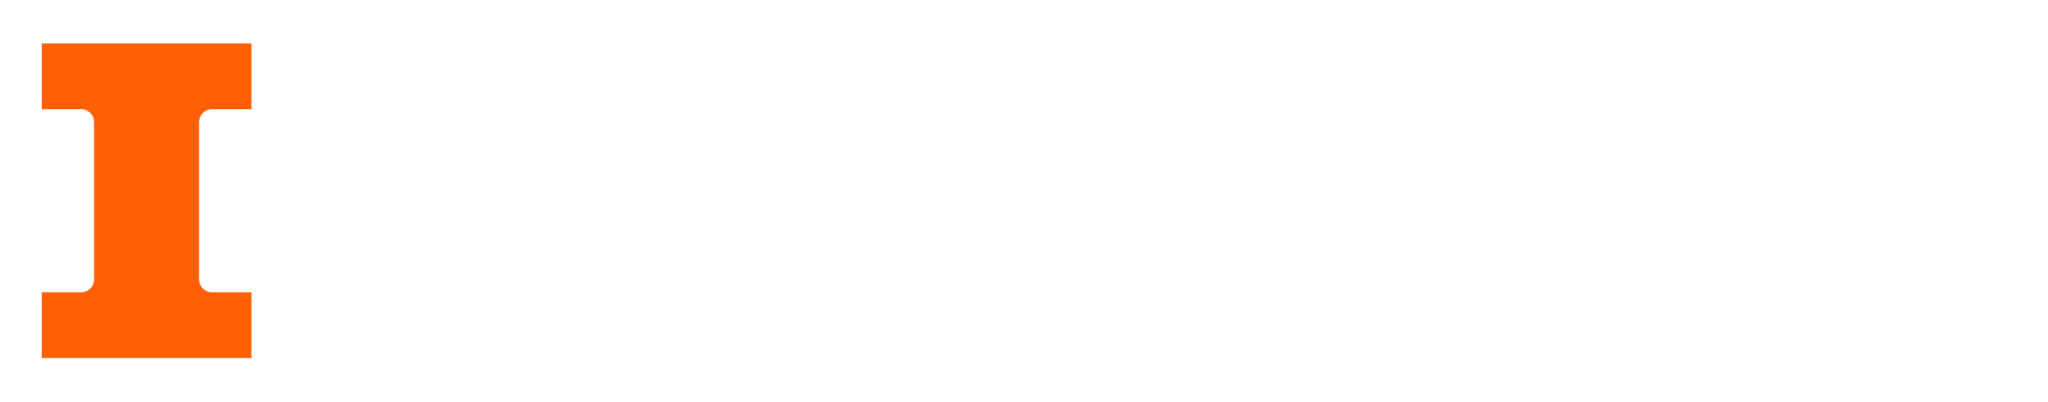 U of I main site logo